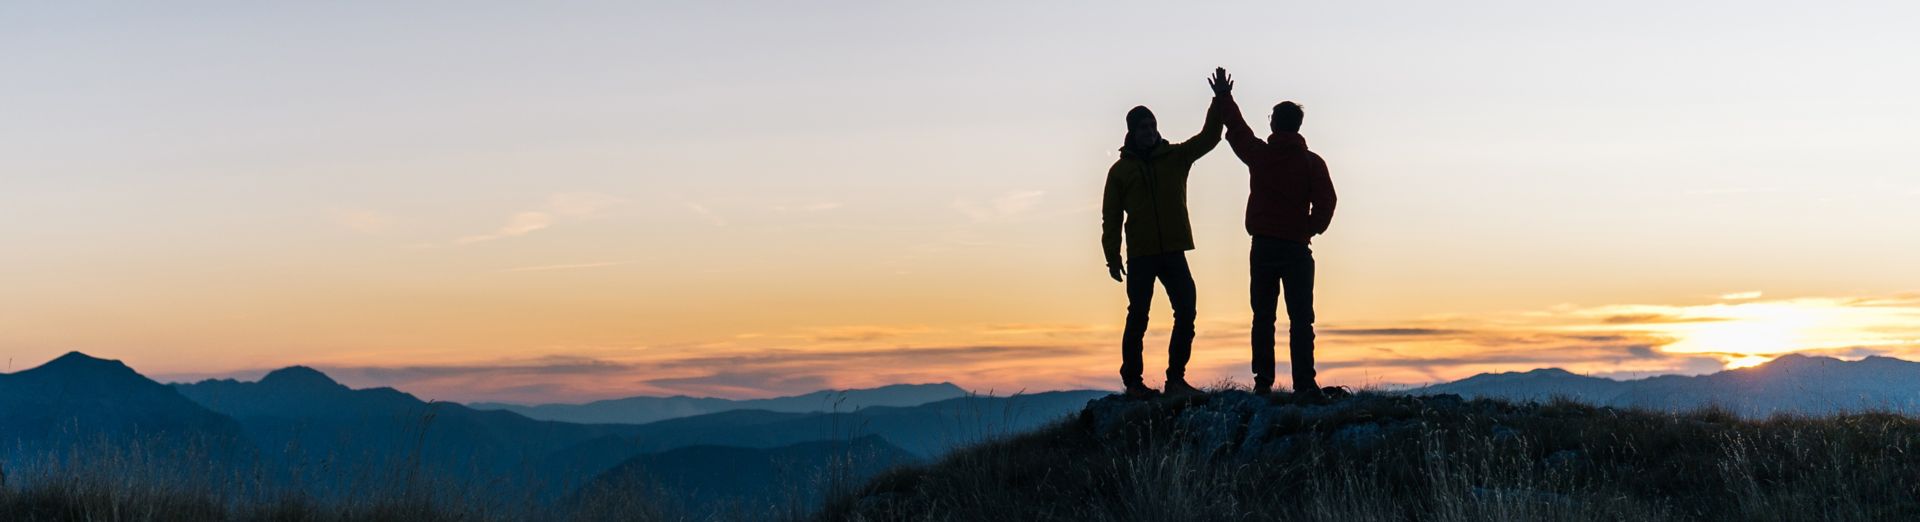 Två personer som står på toppen av ett berg och ser ut över en soluppgång. 